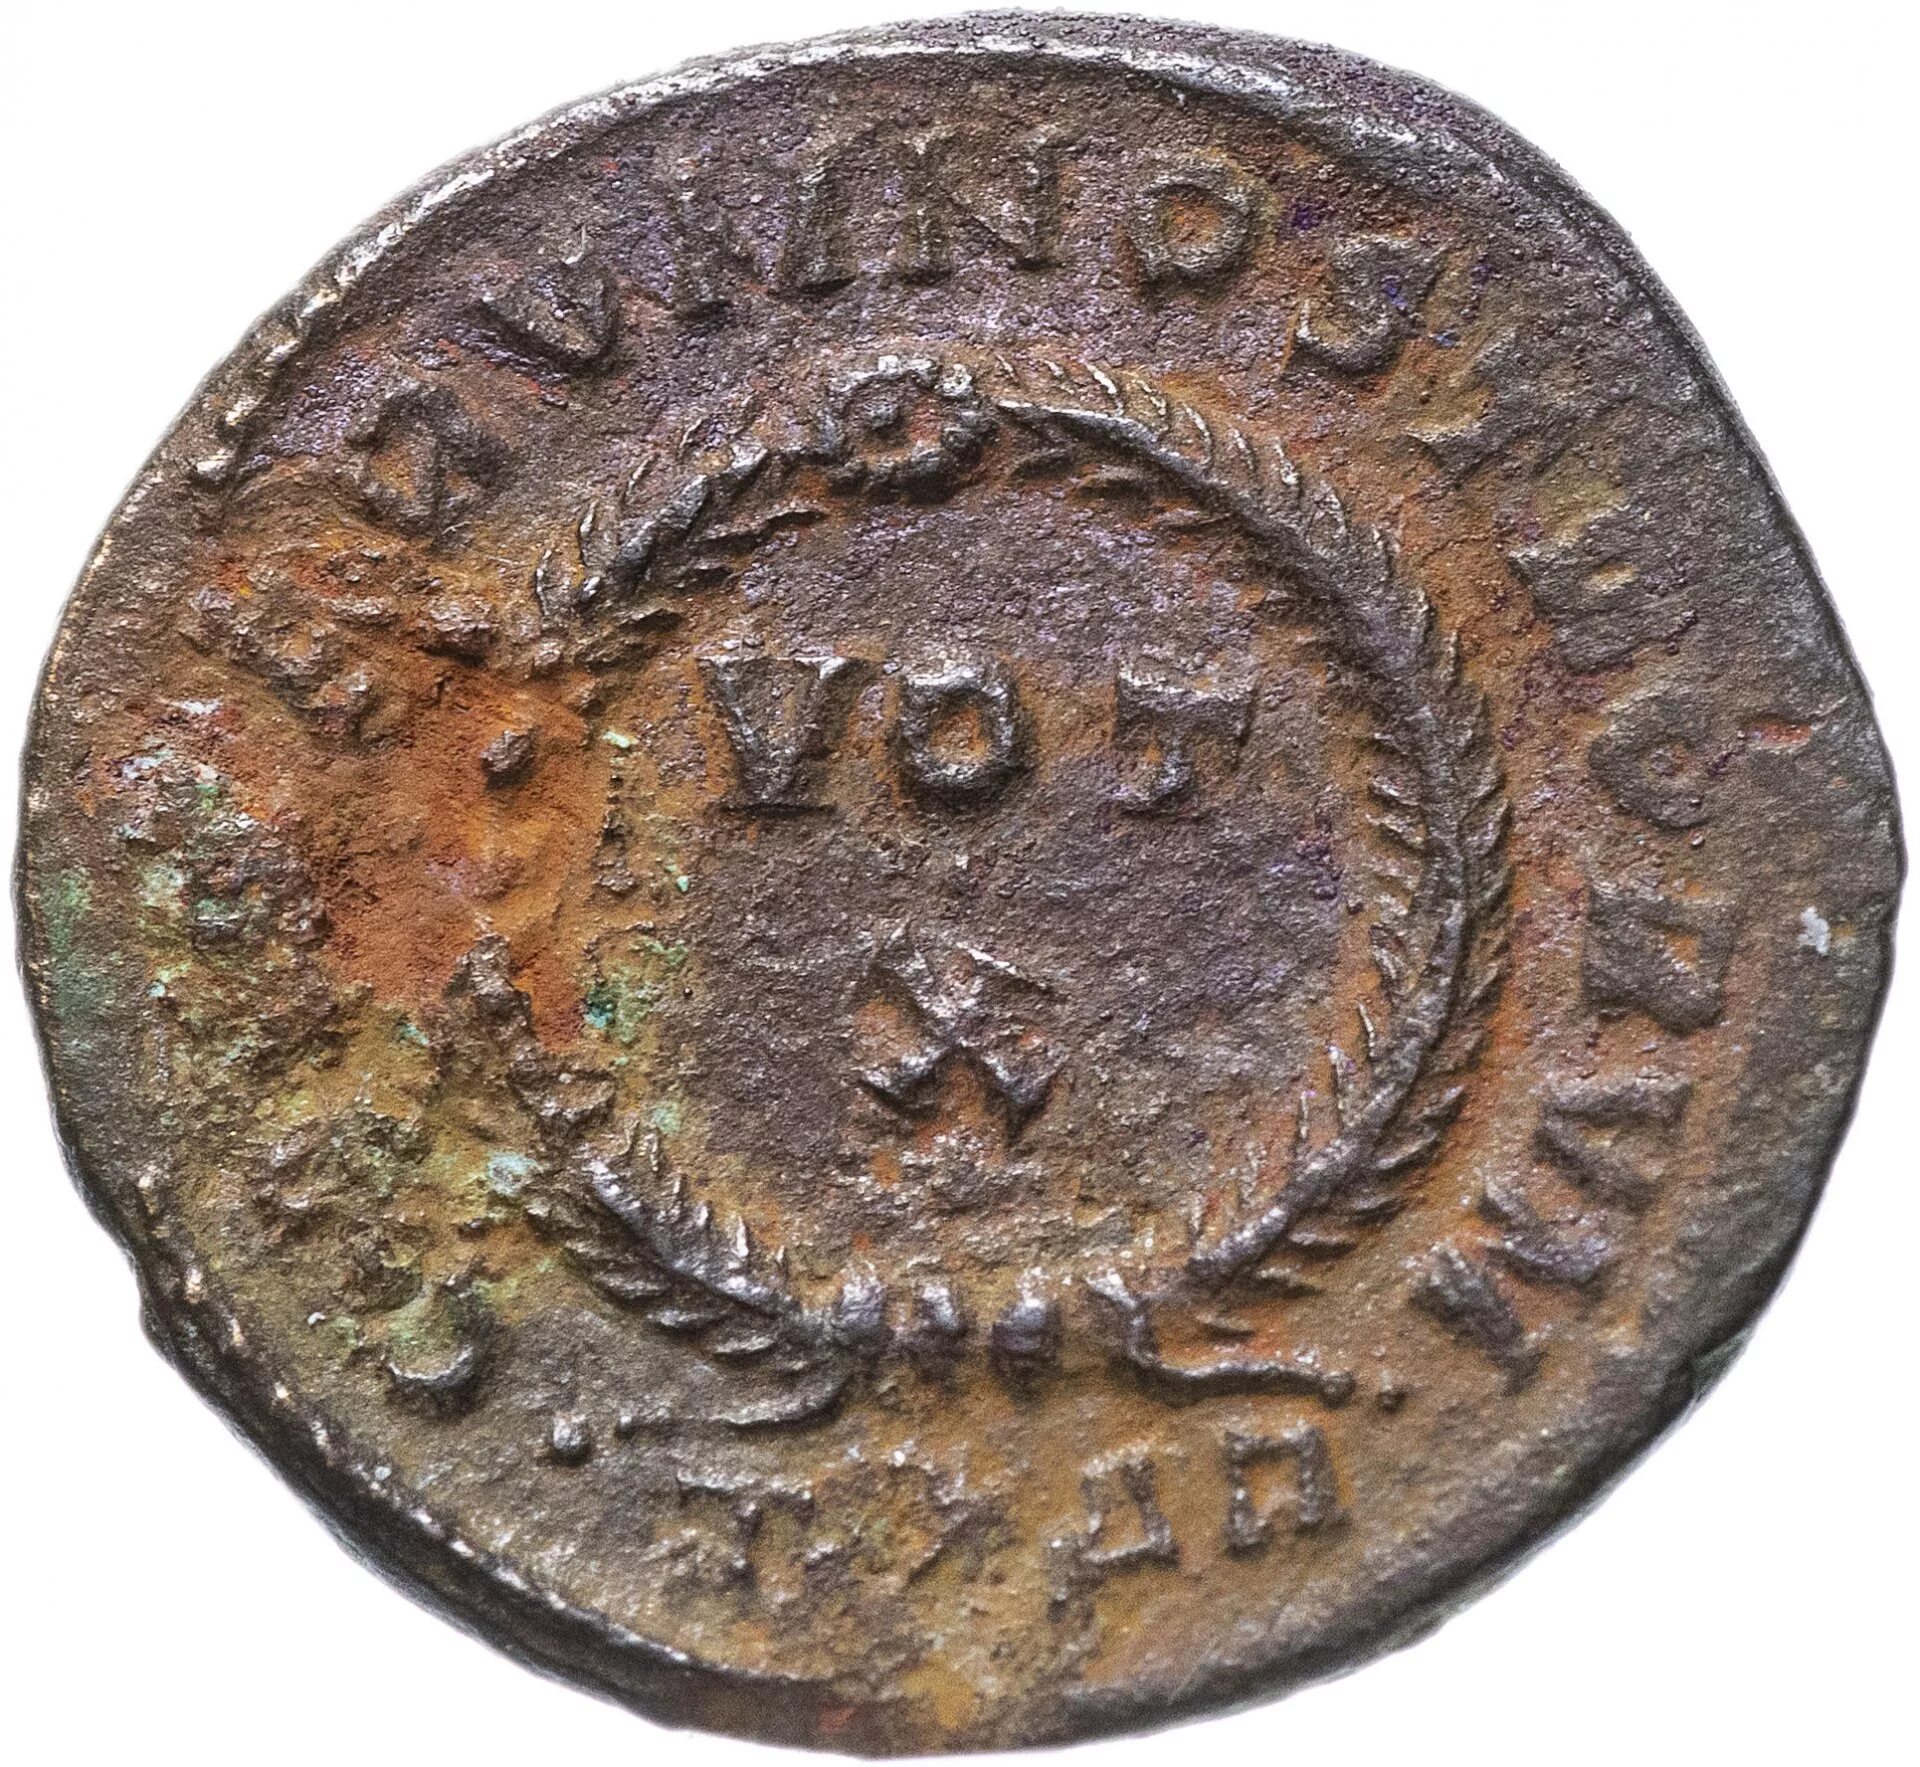 Монета Римская Империя, Крисп, 317-326 годы, нуммий.. Римская Империя монета 1 фоллис. Старинная монета Магдебург 1475 год. Старые монеты.